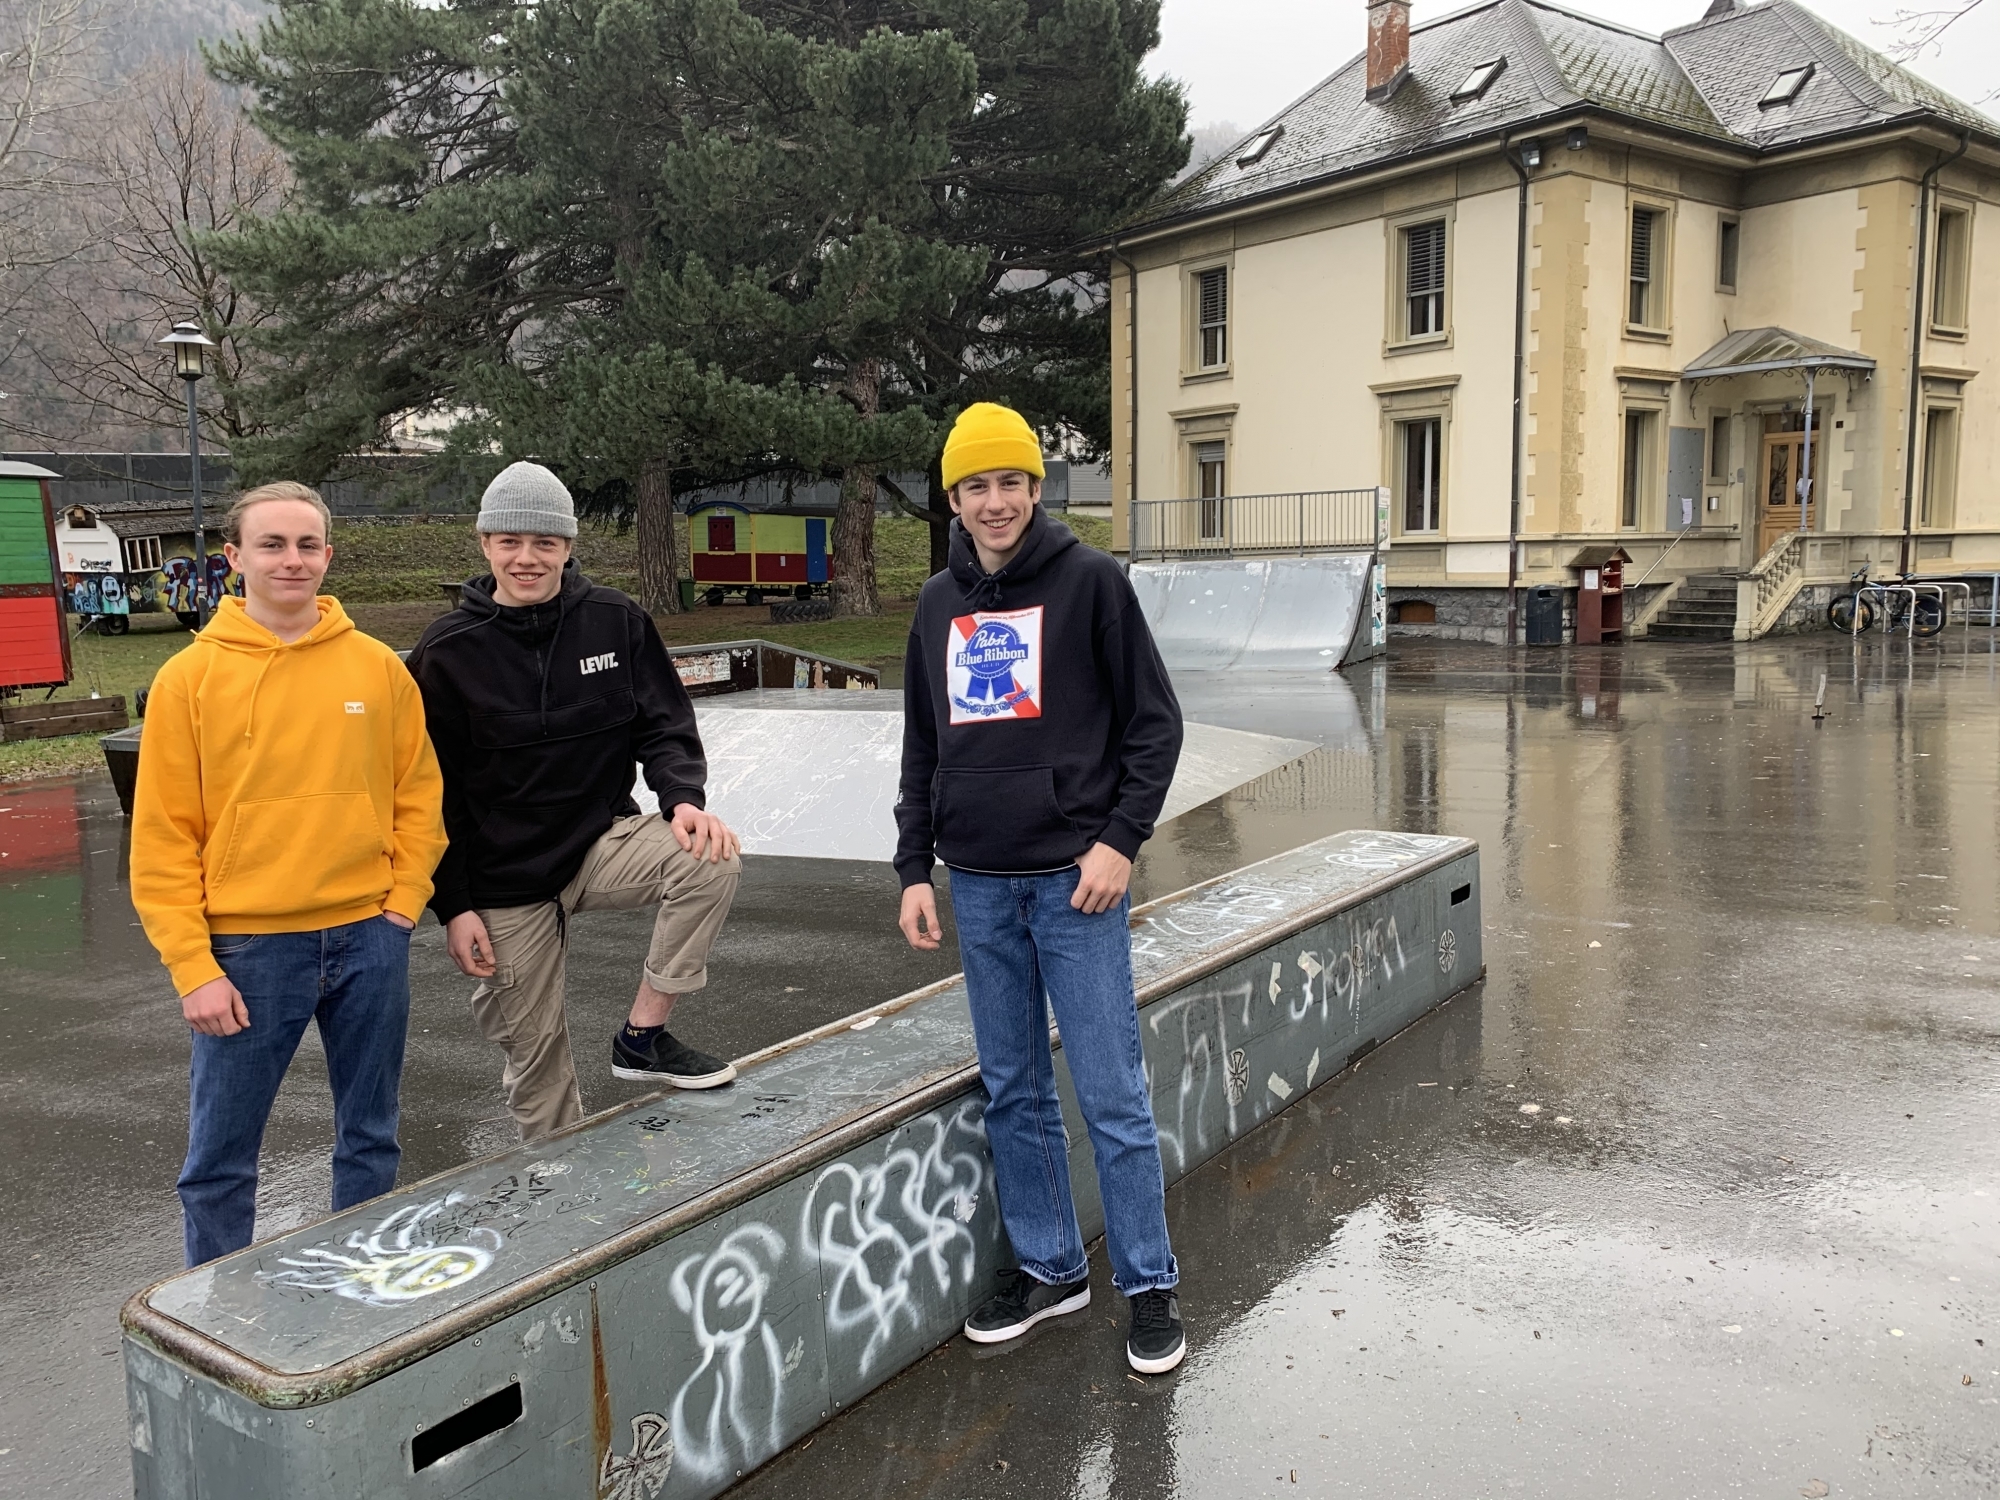 Jeunes amateurs de skate, Julien Rouge, Titouan Moulin et Adrien Chabbey font partie des initiateurs du projet de nouveau skatepark destiné à remplacer les rampes datant de 1991 et qui ne répondent plus à leurs attentes.